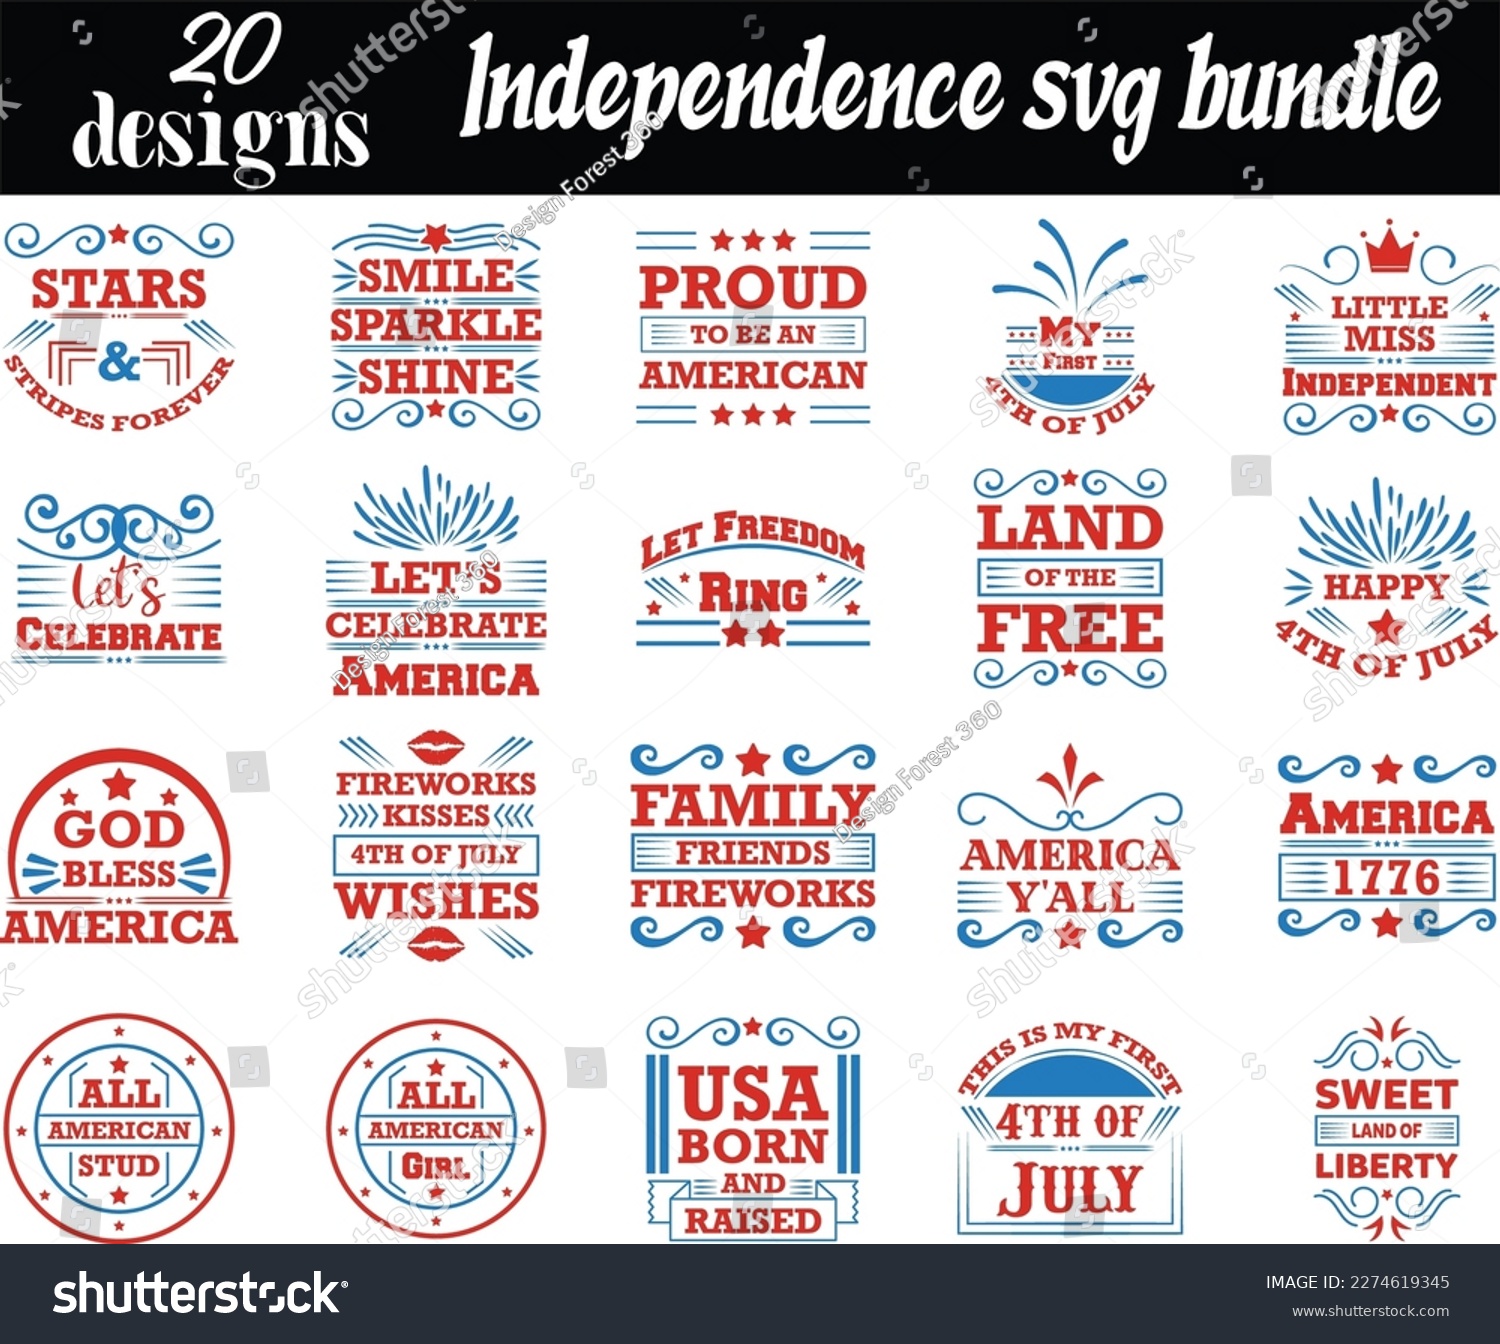 SVG of Independence svg bundle, Independence svg design svg